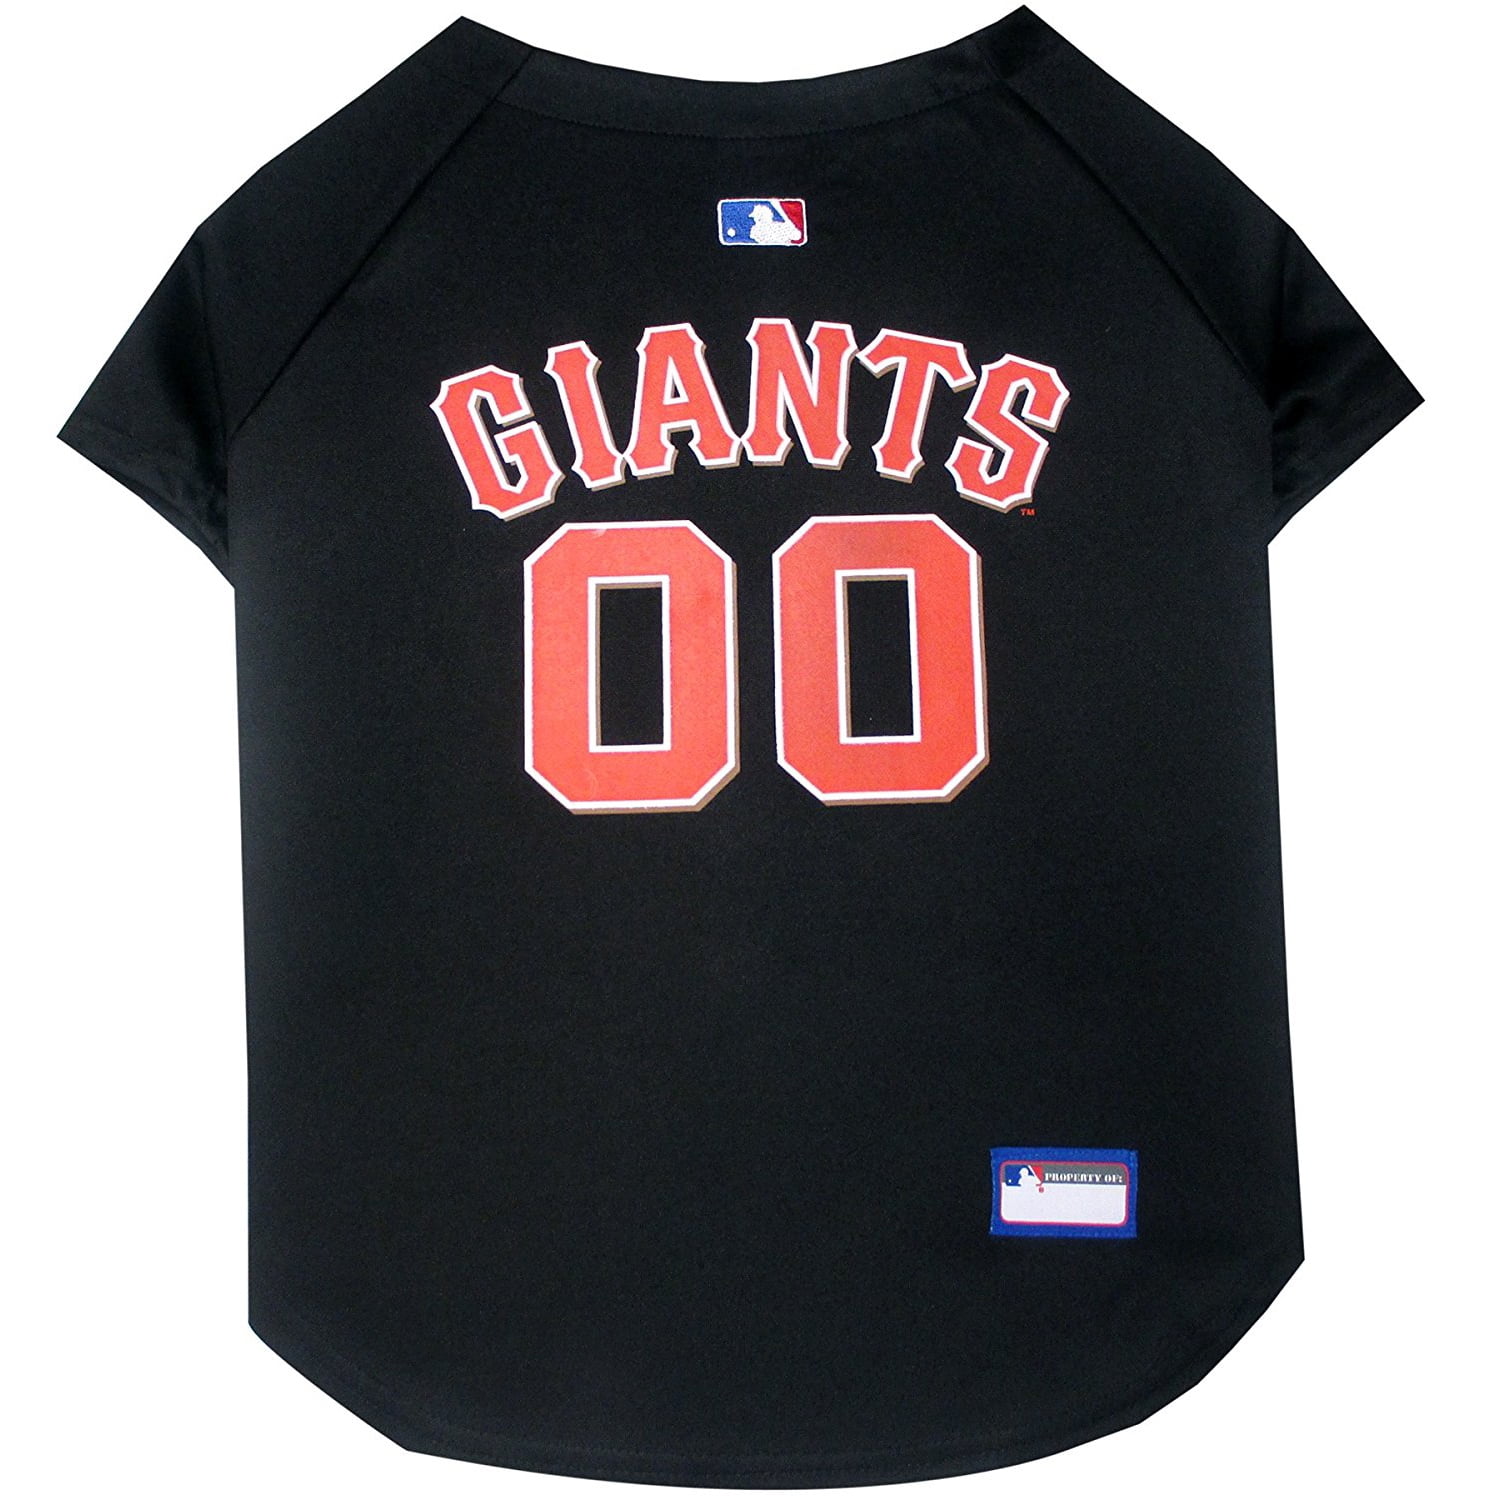 True Fan San Francisco Giants Baseball Jersey Black / Orange Size